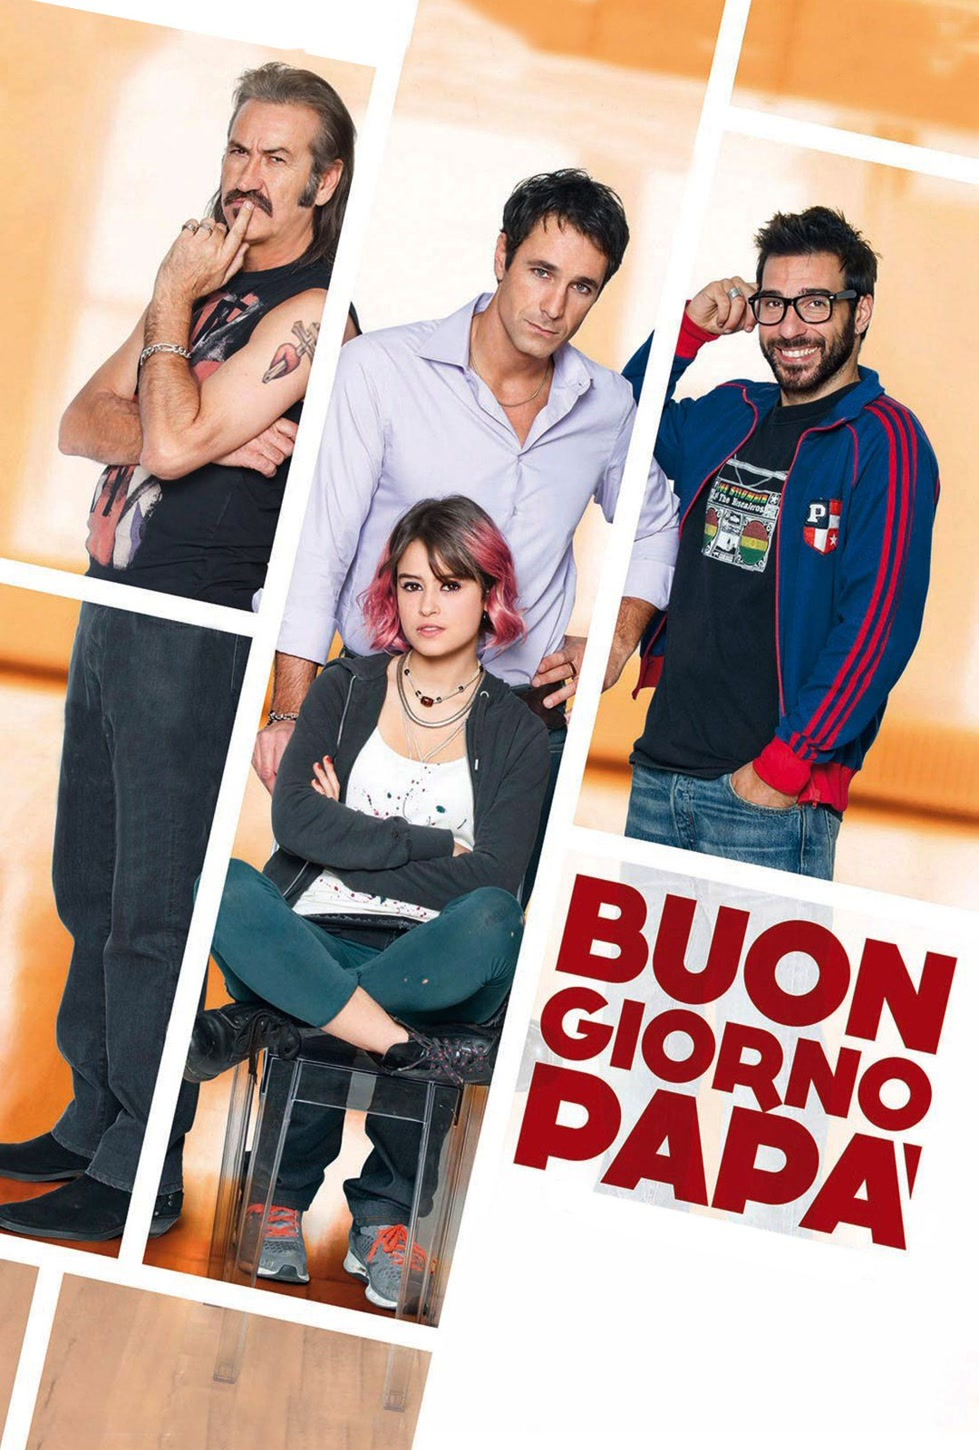 Buongiorno papà (2013)